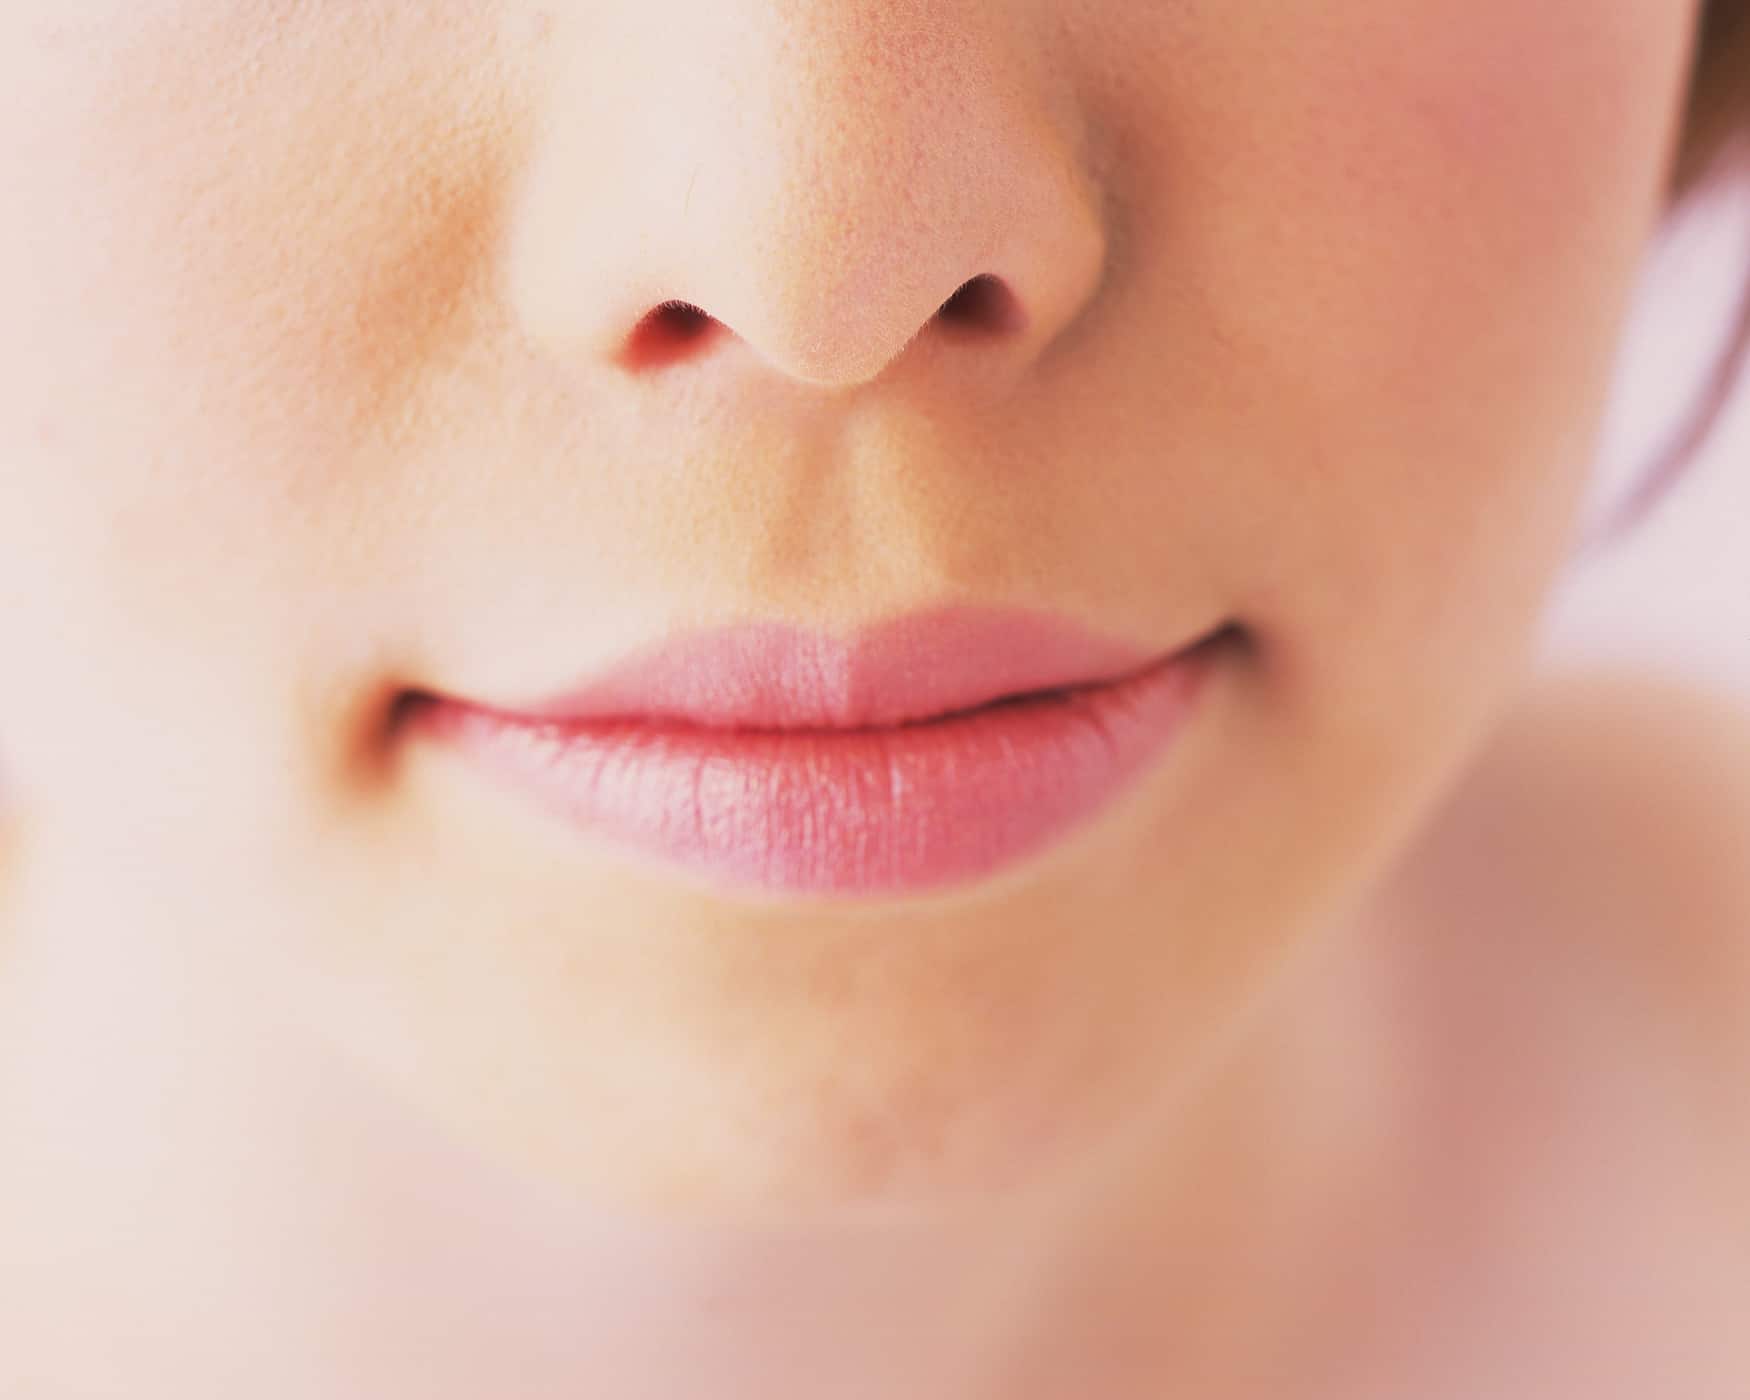 특정 질병의 징후일 수 있는 입술의 4가지 증상